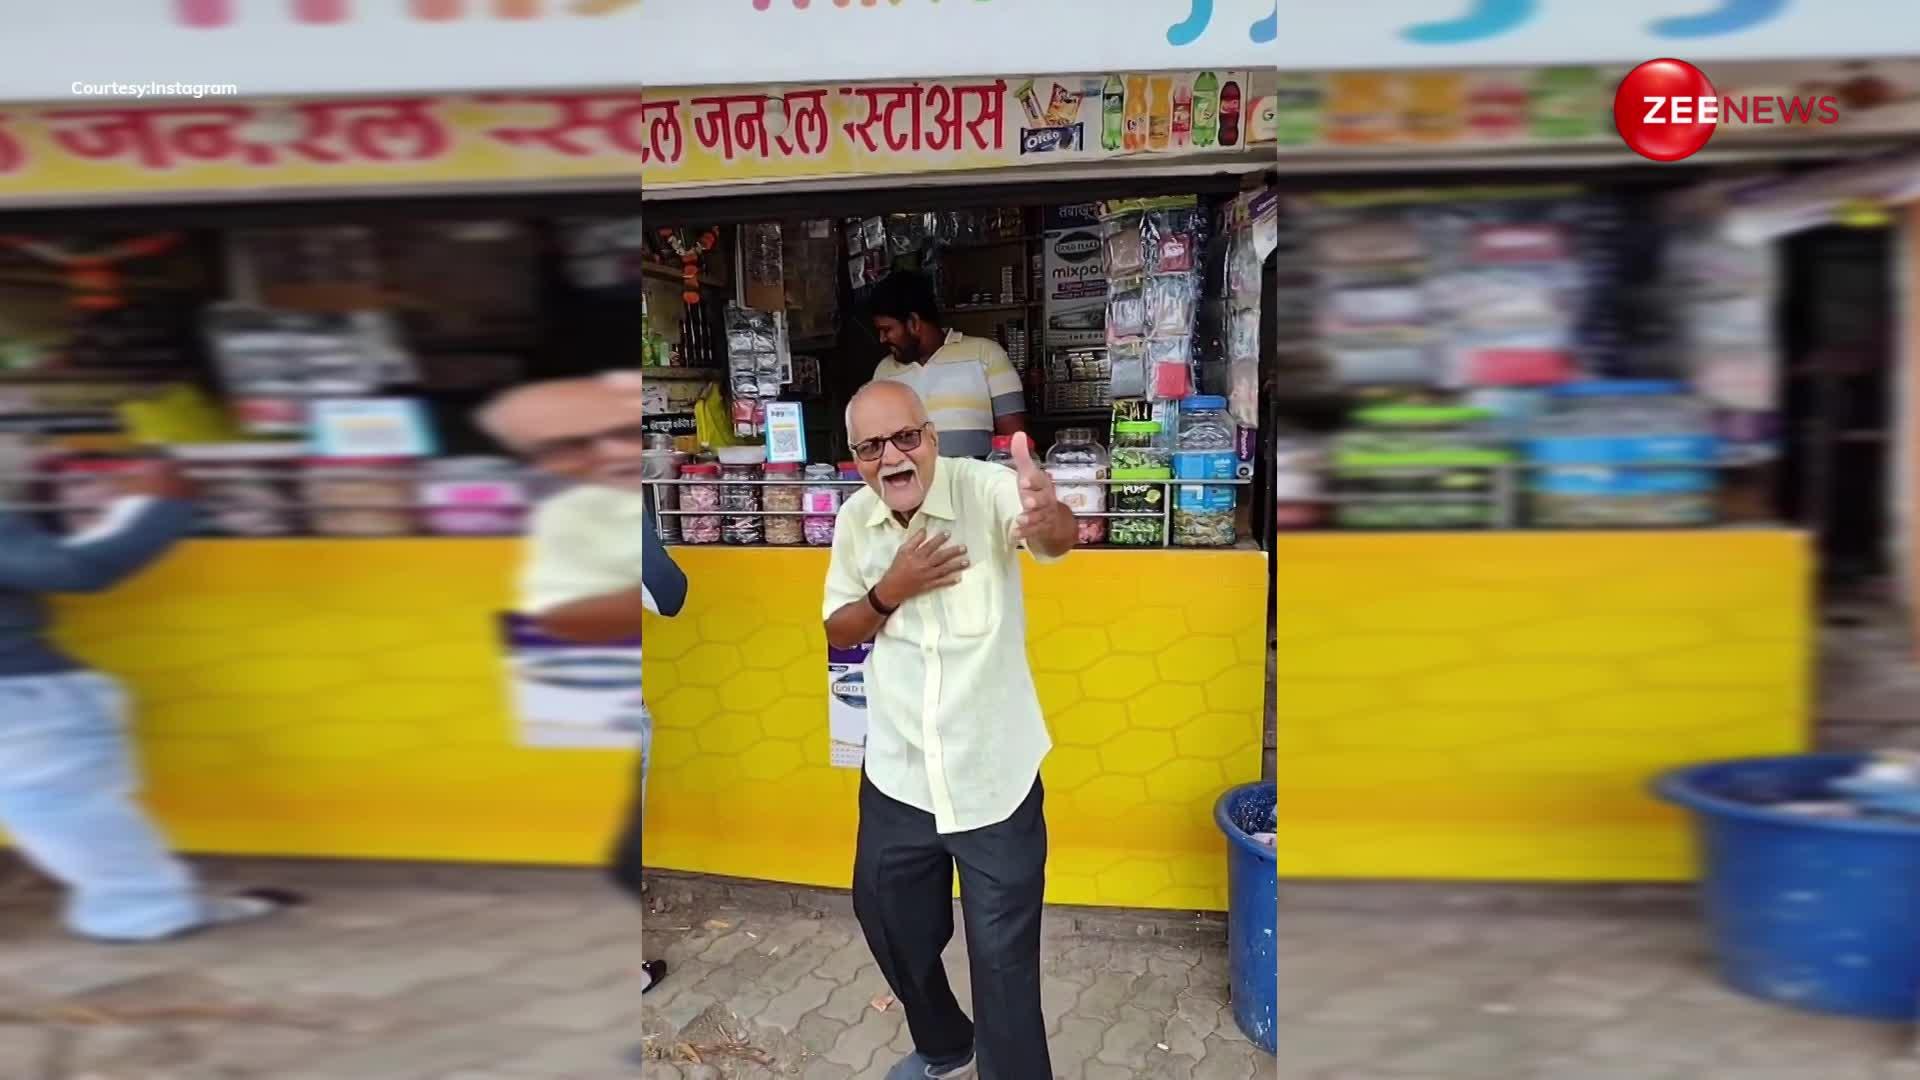 85 साल के दादा जी ने श्रीदेवी और ऋषि कपूर के गाने ‘ओ मेरी चांदनी’ पर बनाई मस्त रील, वीडियो देख लोगों ने की जमकर तारीफ